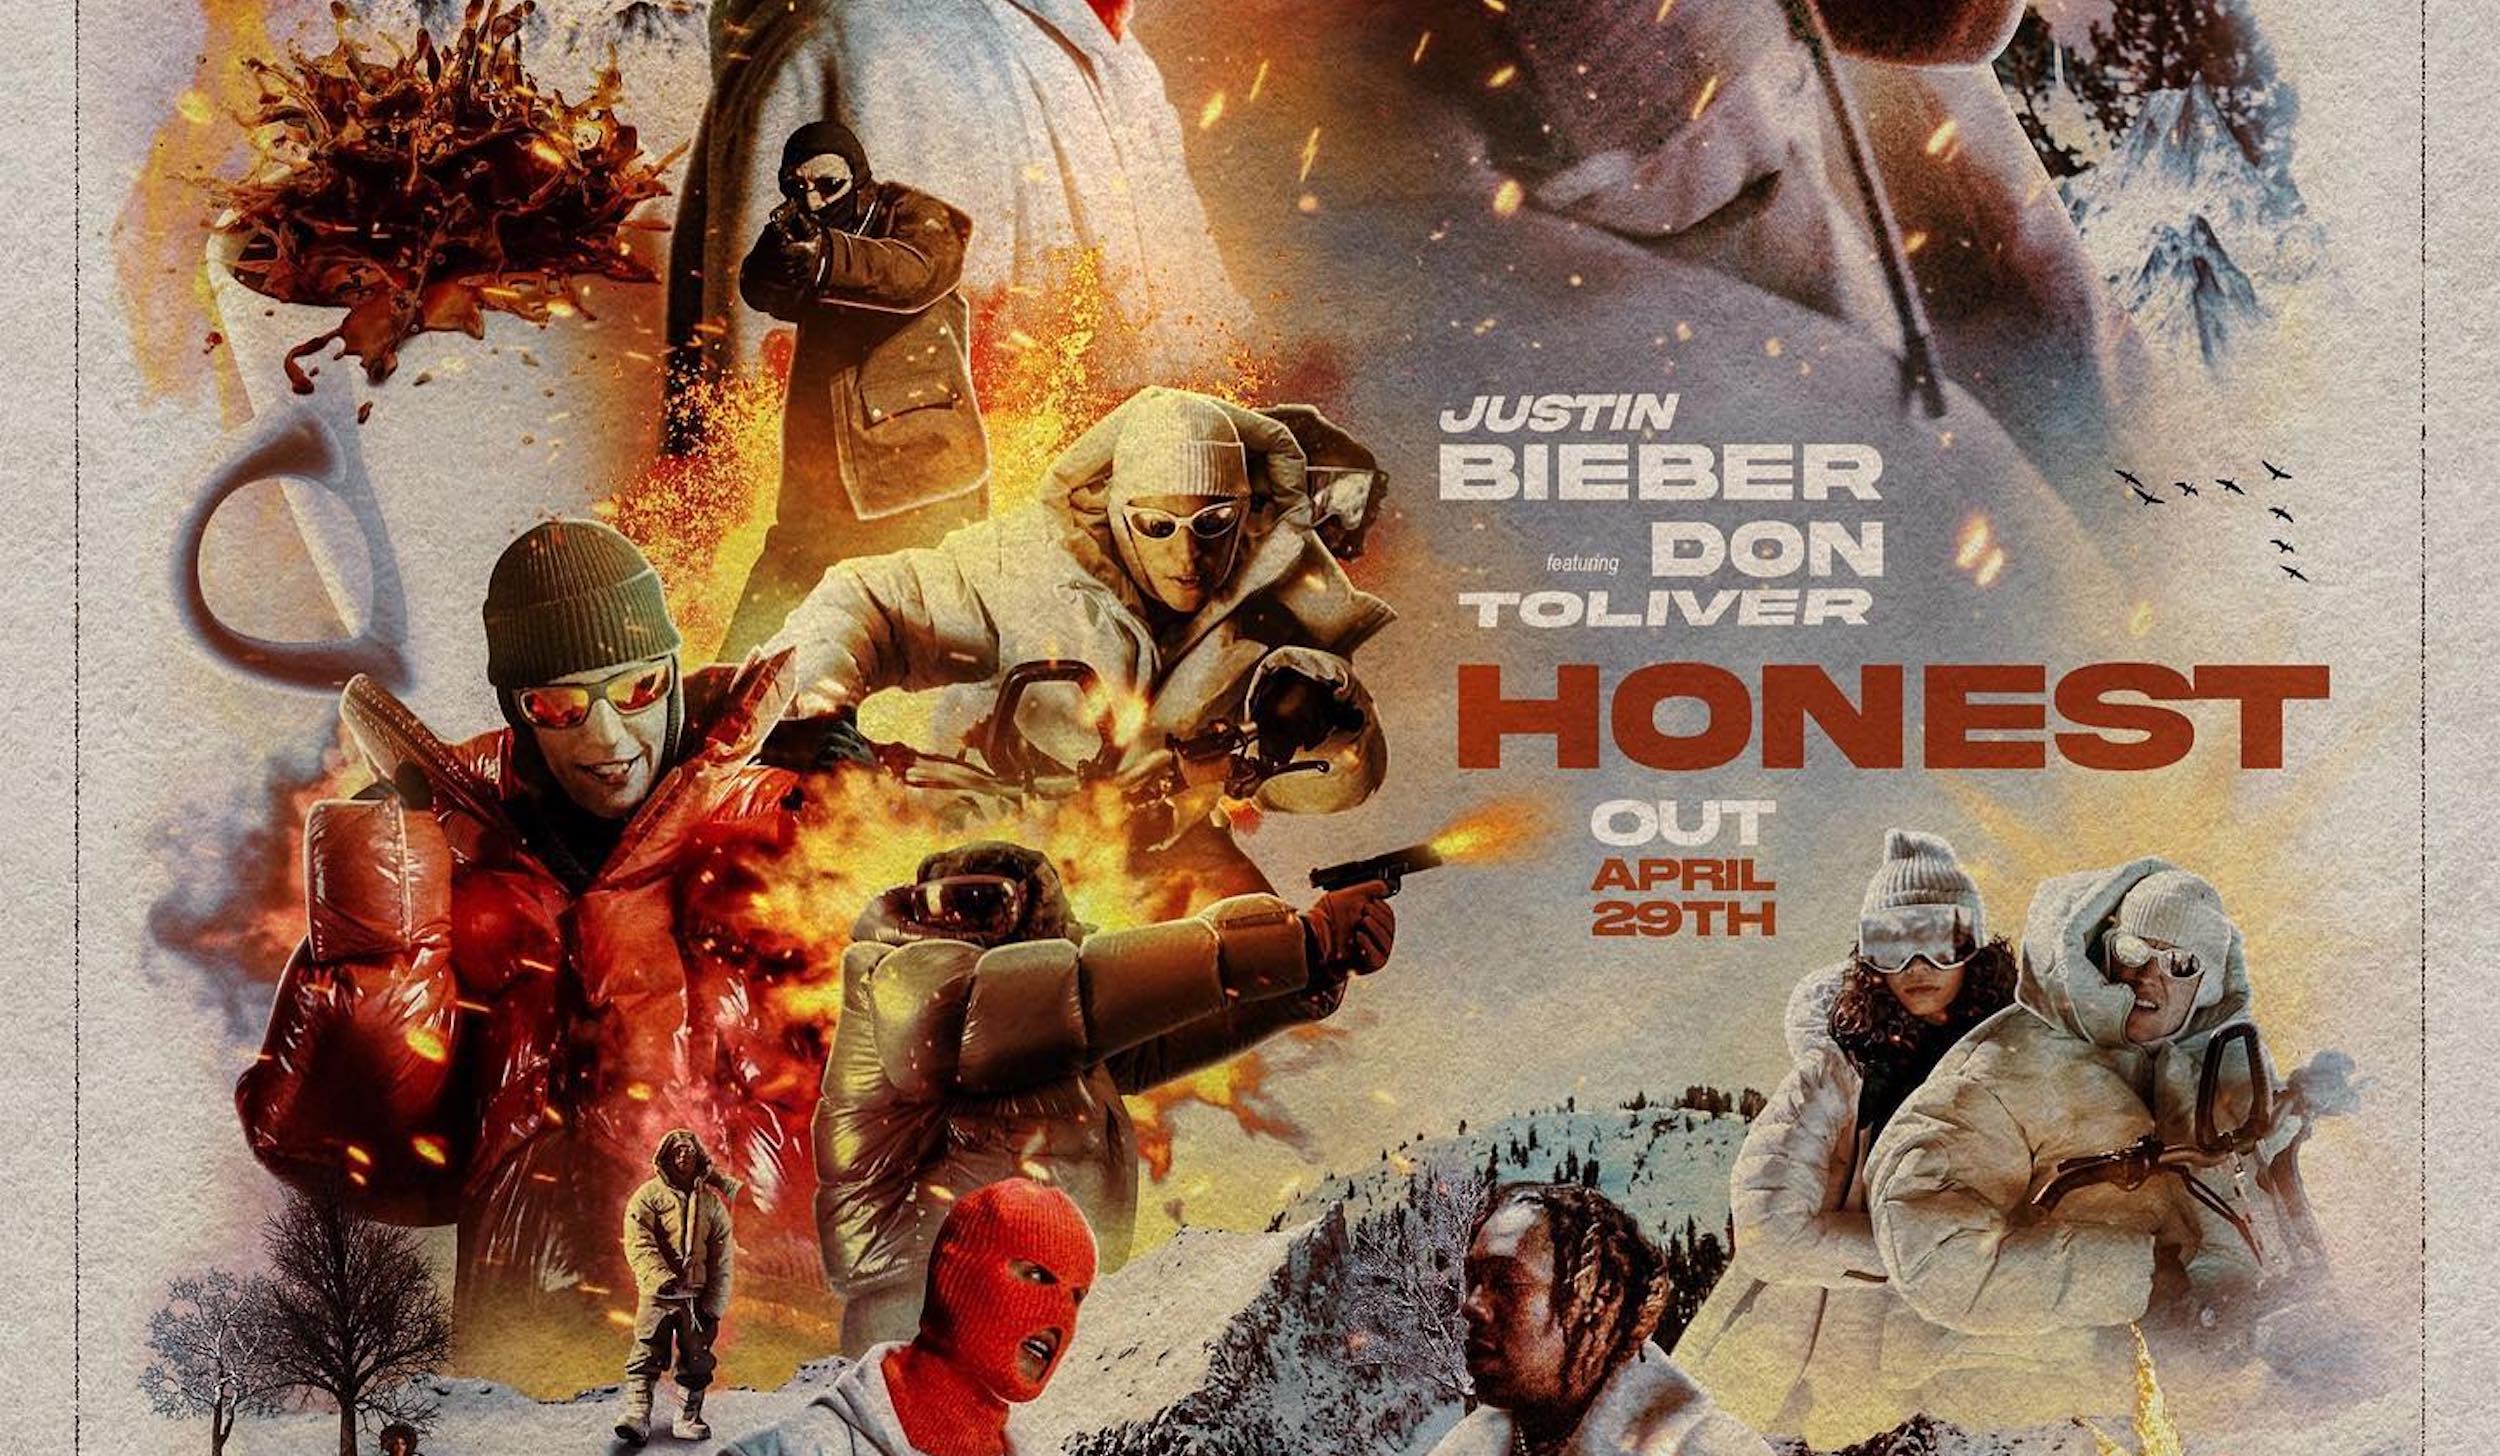 Justin Bieber /Don Toliver Music Video V.O. for “Honest.”